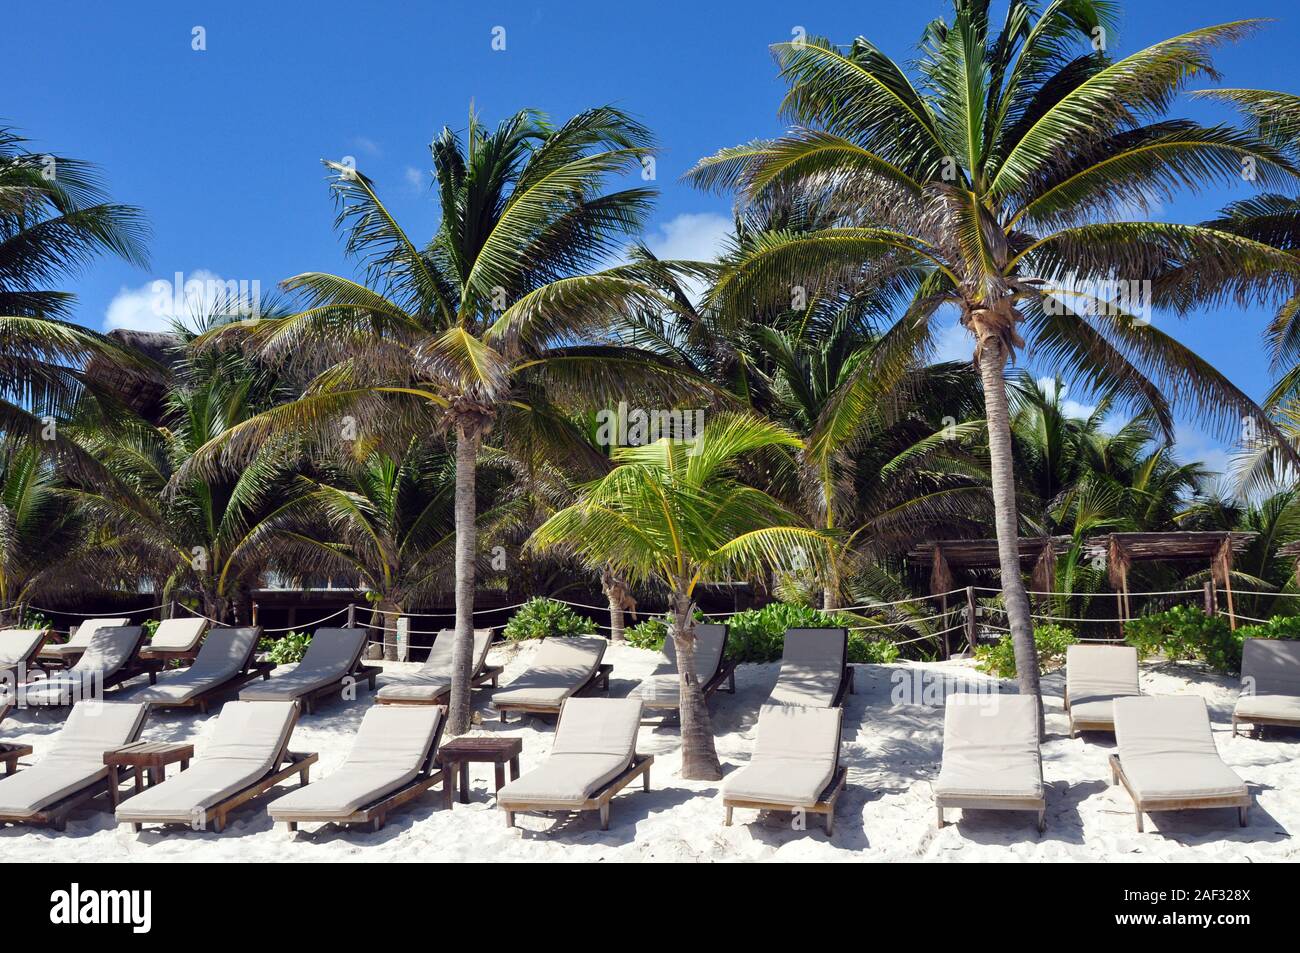 Des chaises longues en bois avec coussins de bronzage sur une plage de sable avec des palmiers tout autour. Banque D'Images